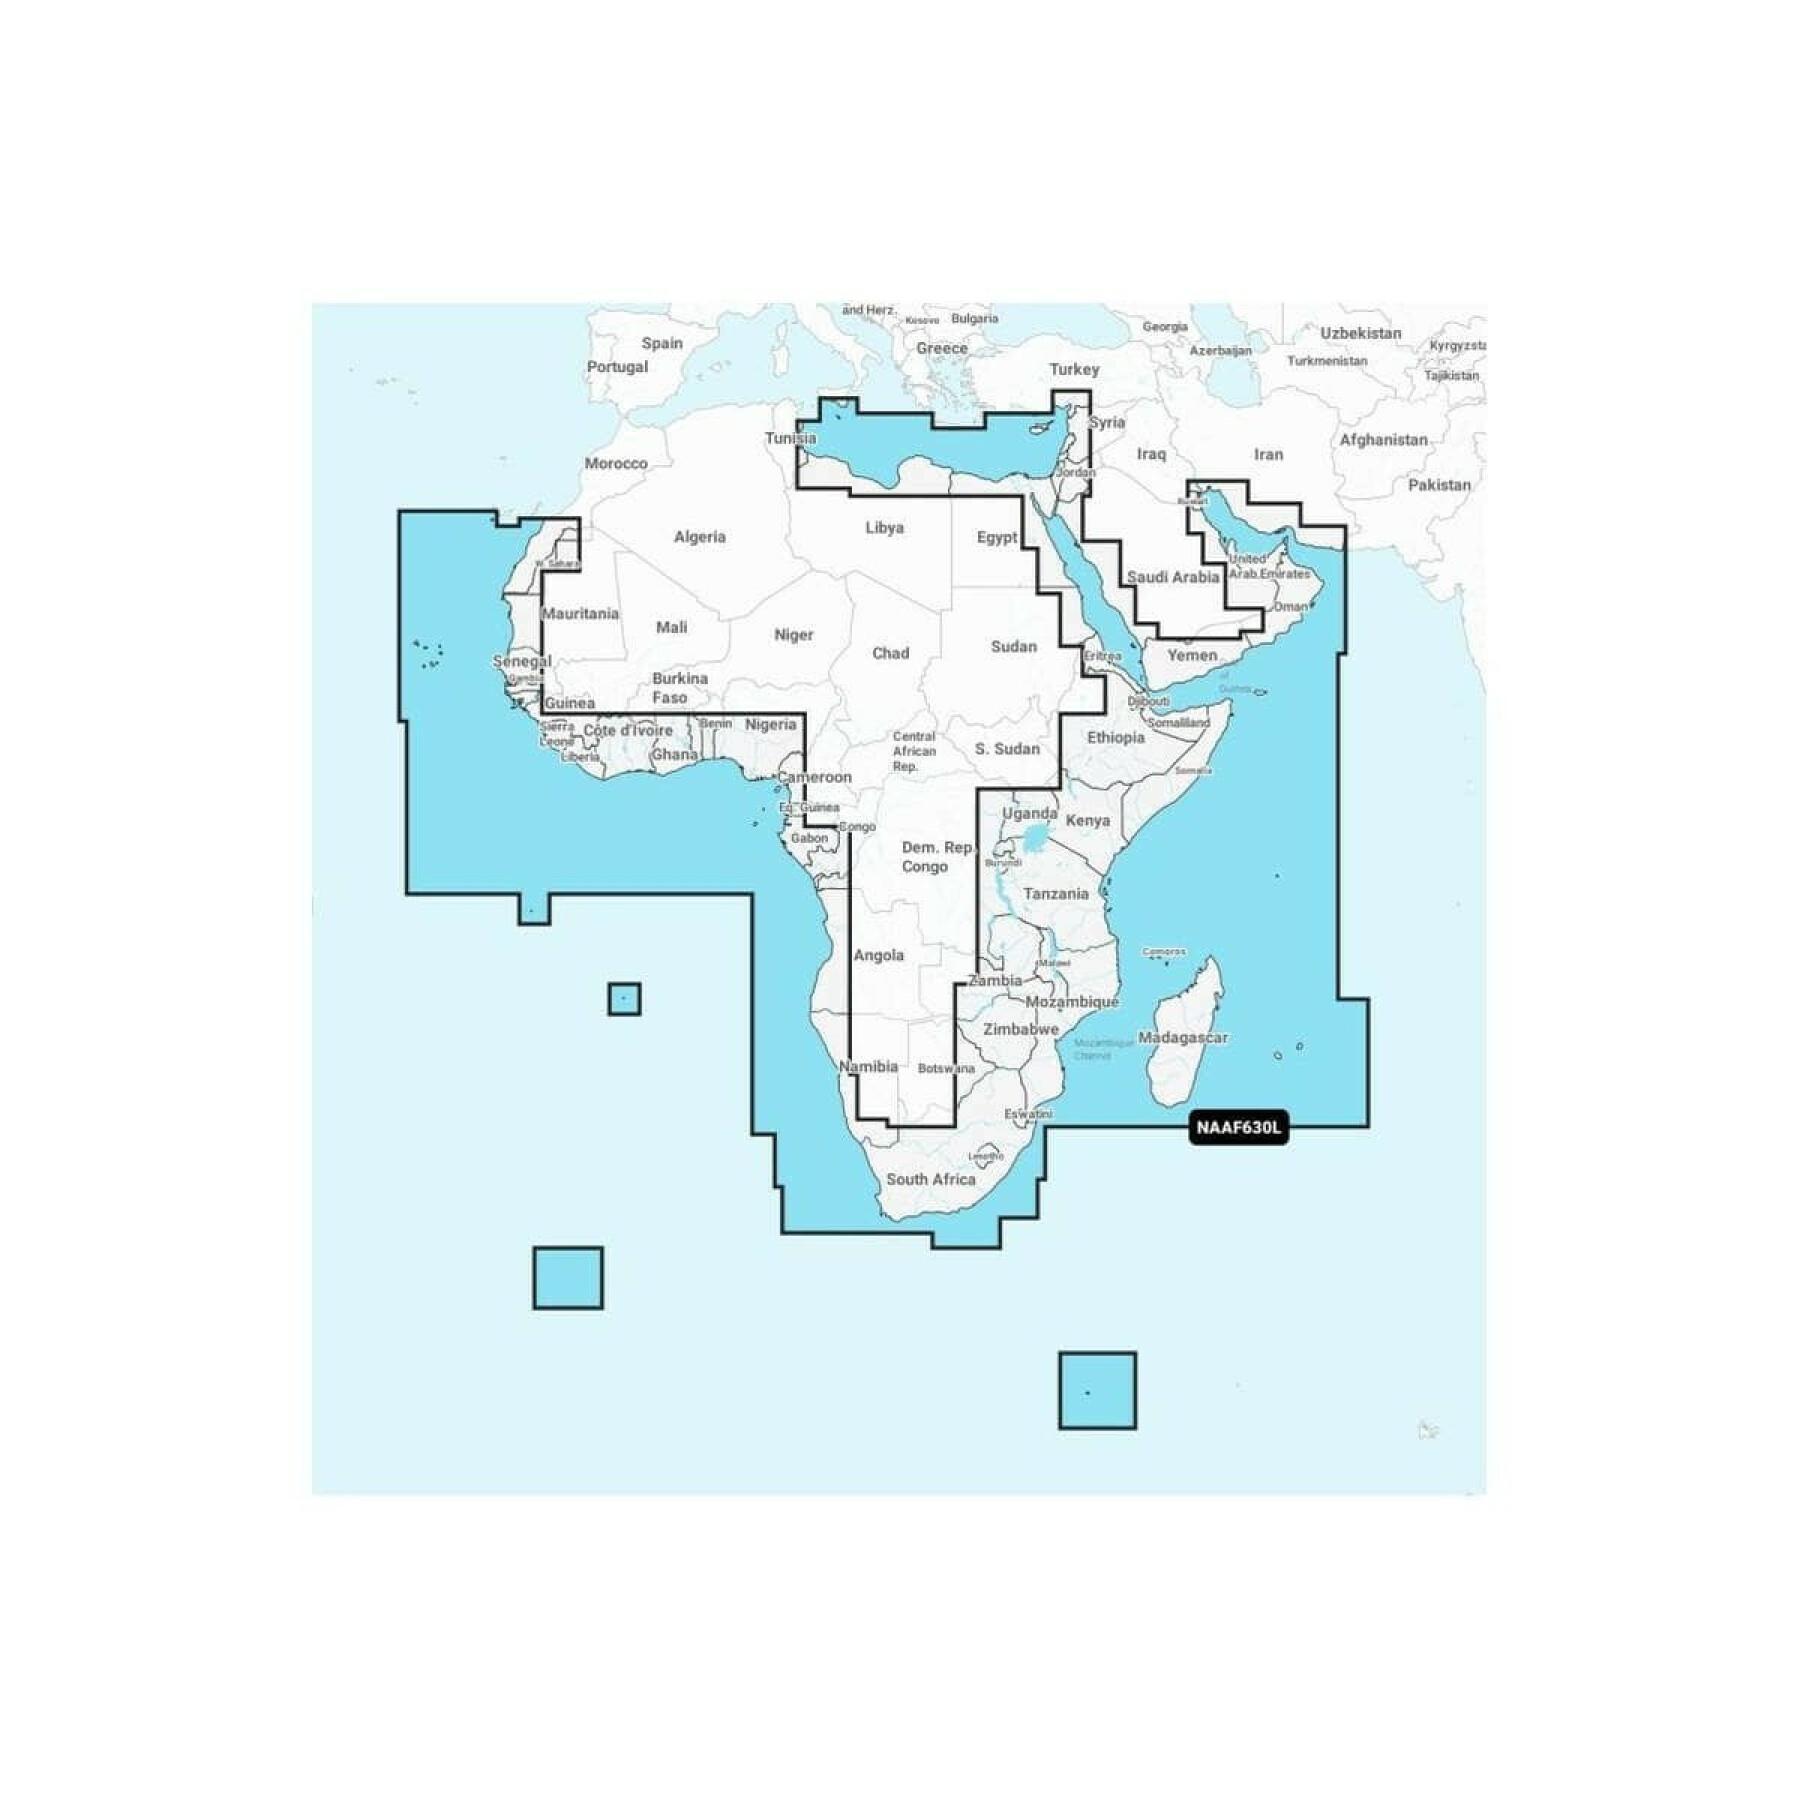 Navigatie kaart + grote sd - afrika - midden oosten platina Navionics